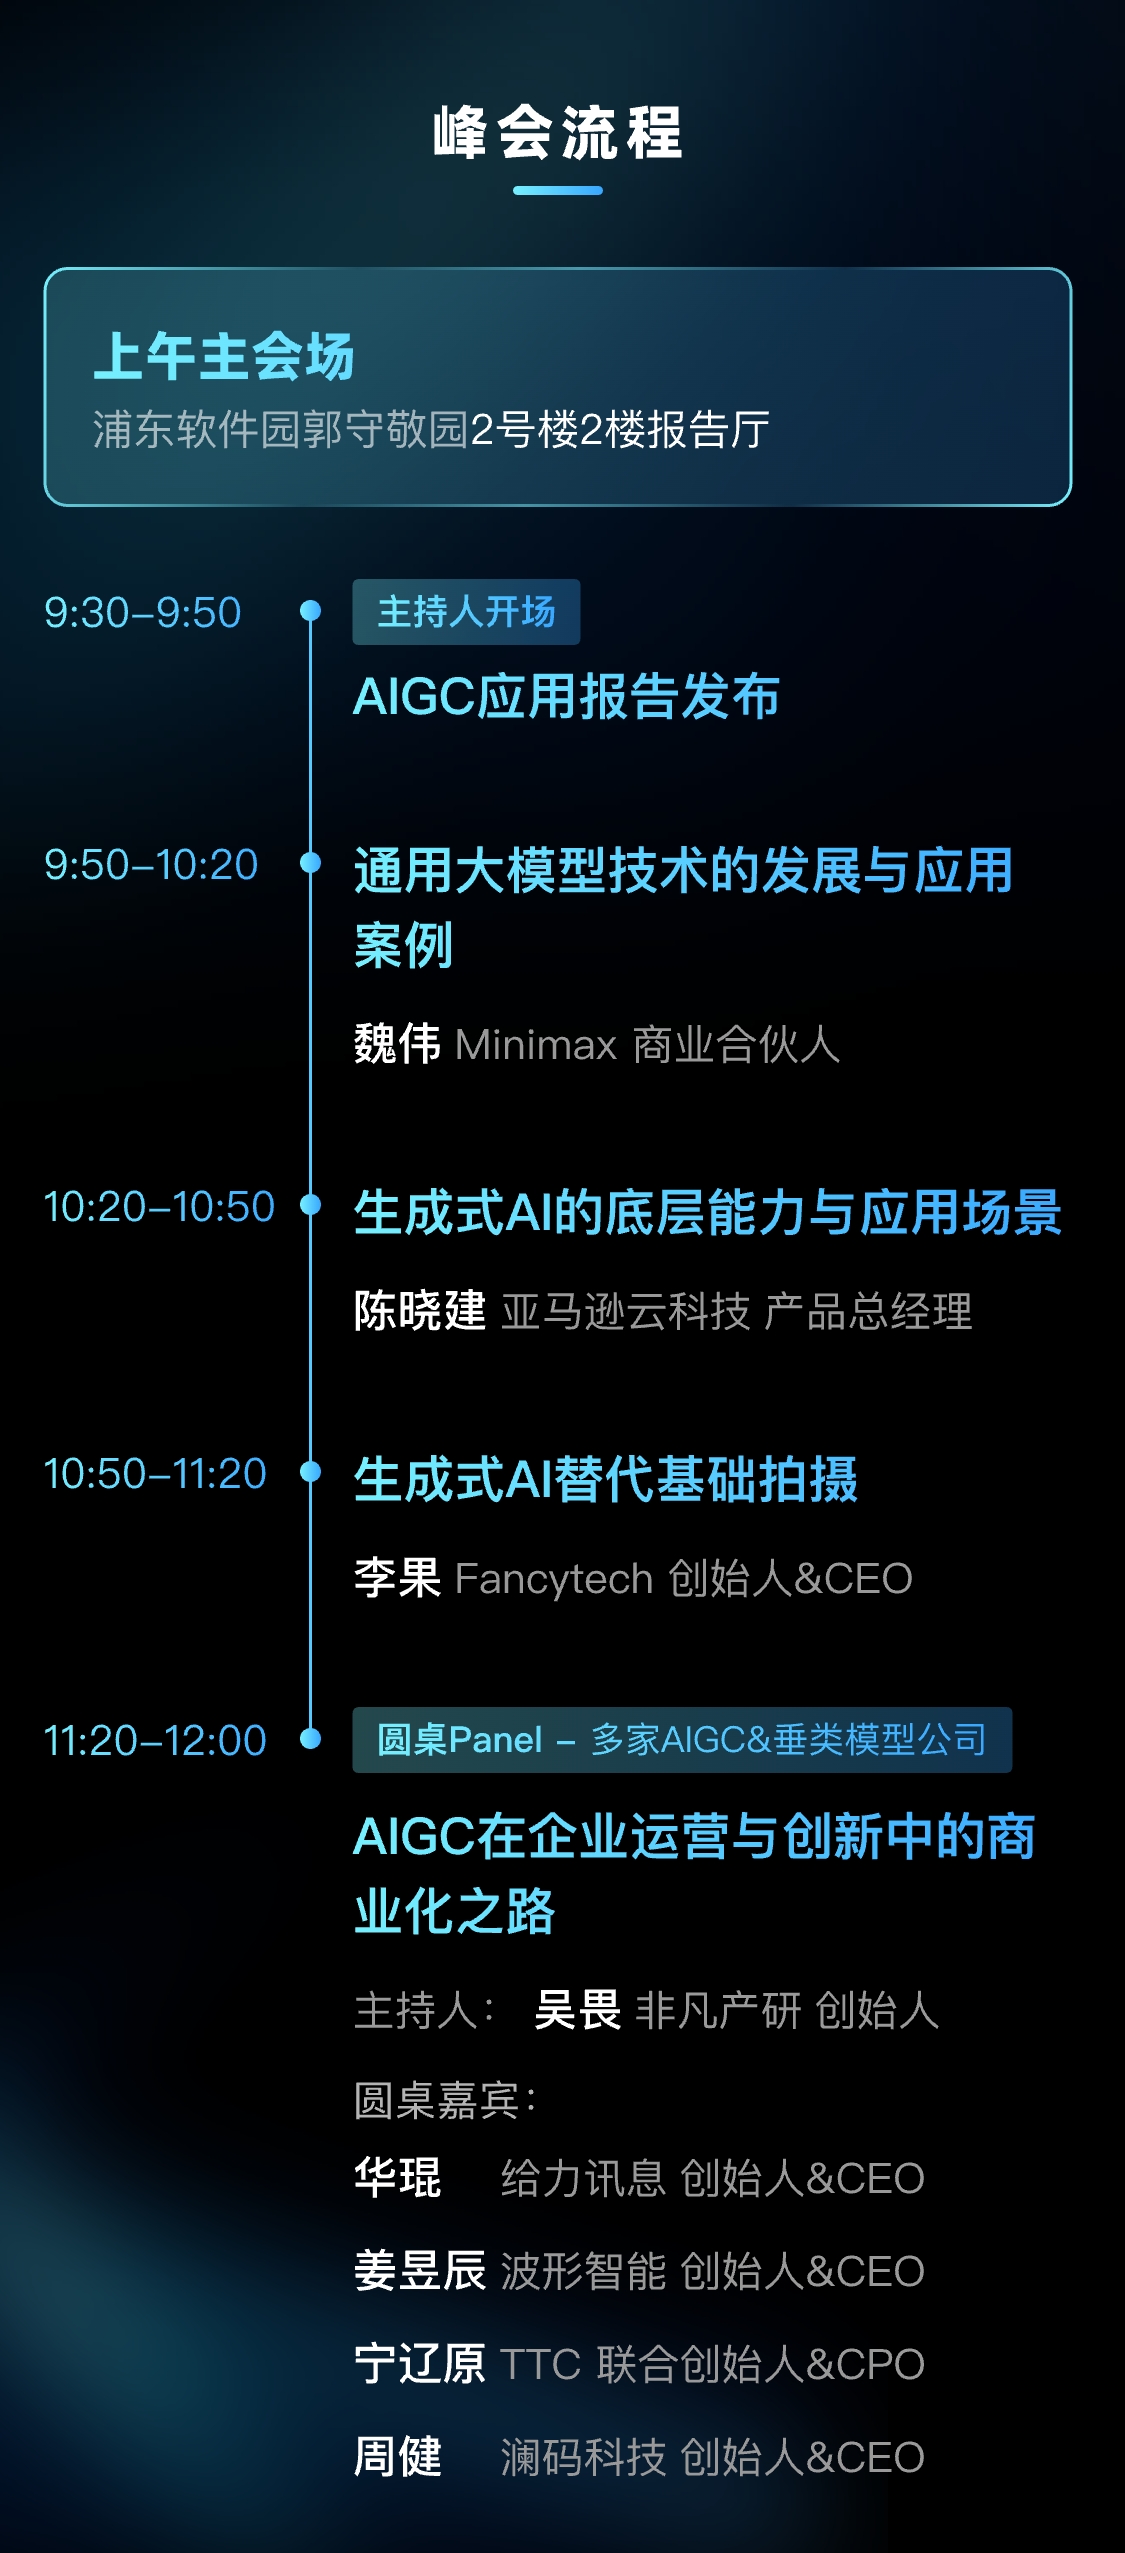 AIGC应用商业峰会